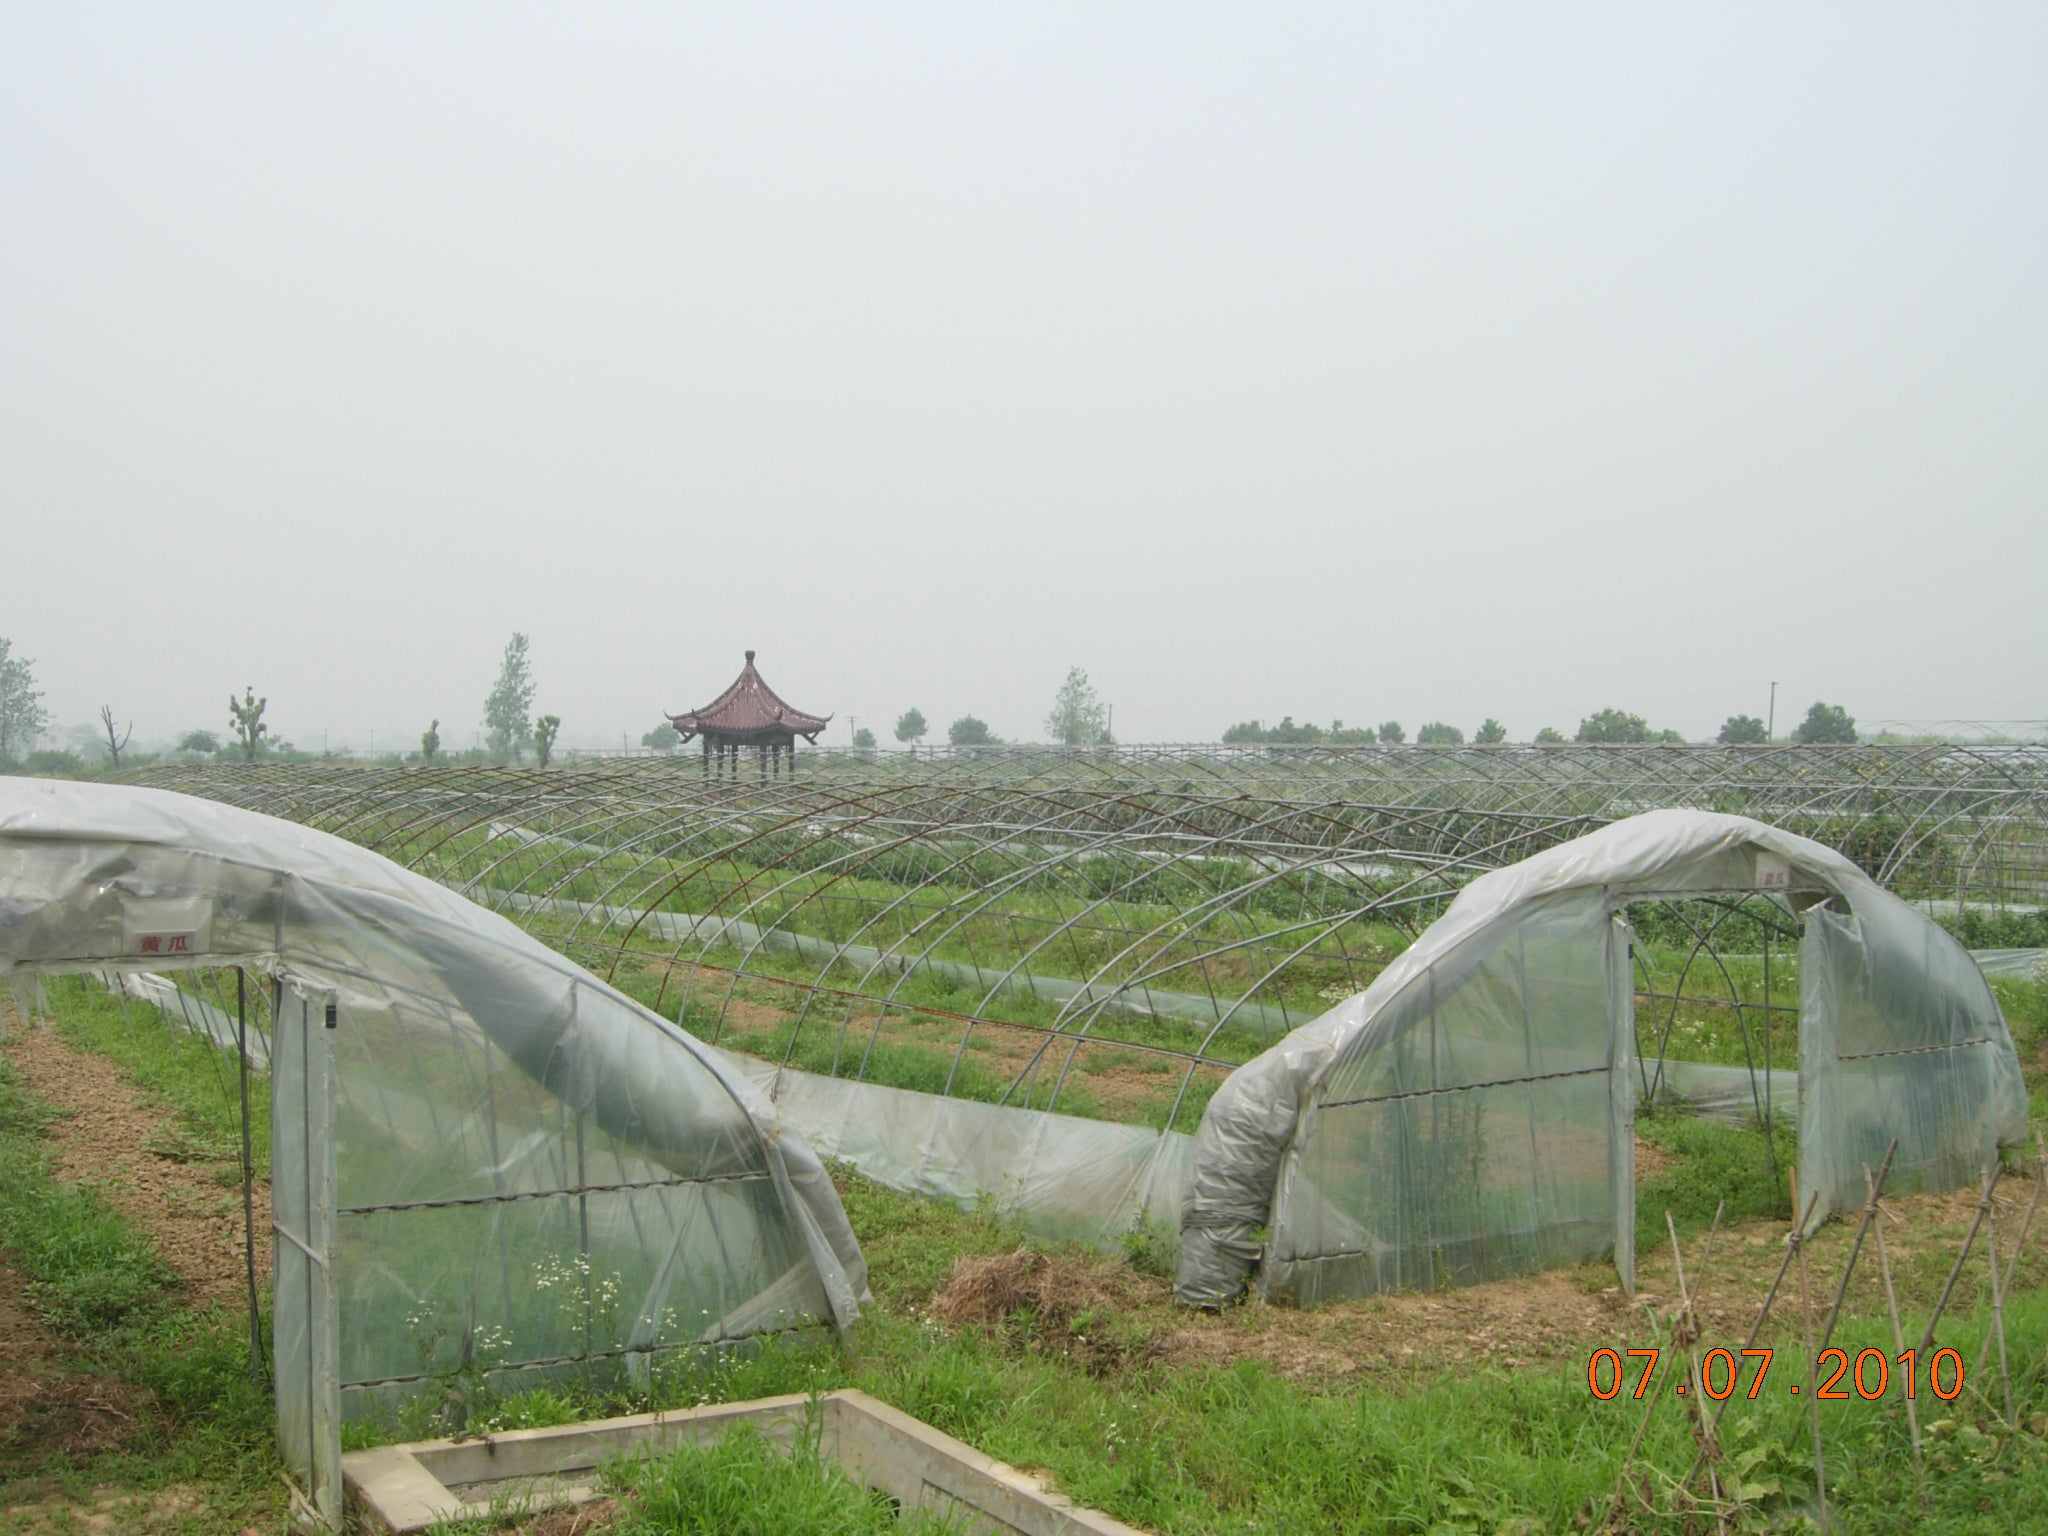 Organic farm in Nanjing